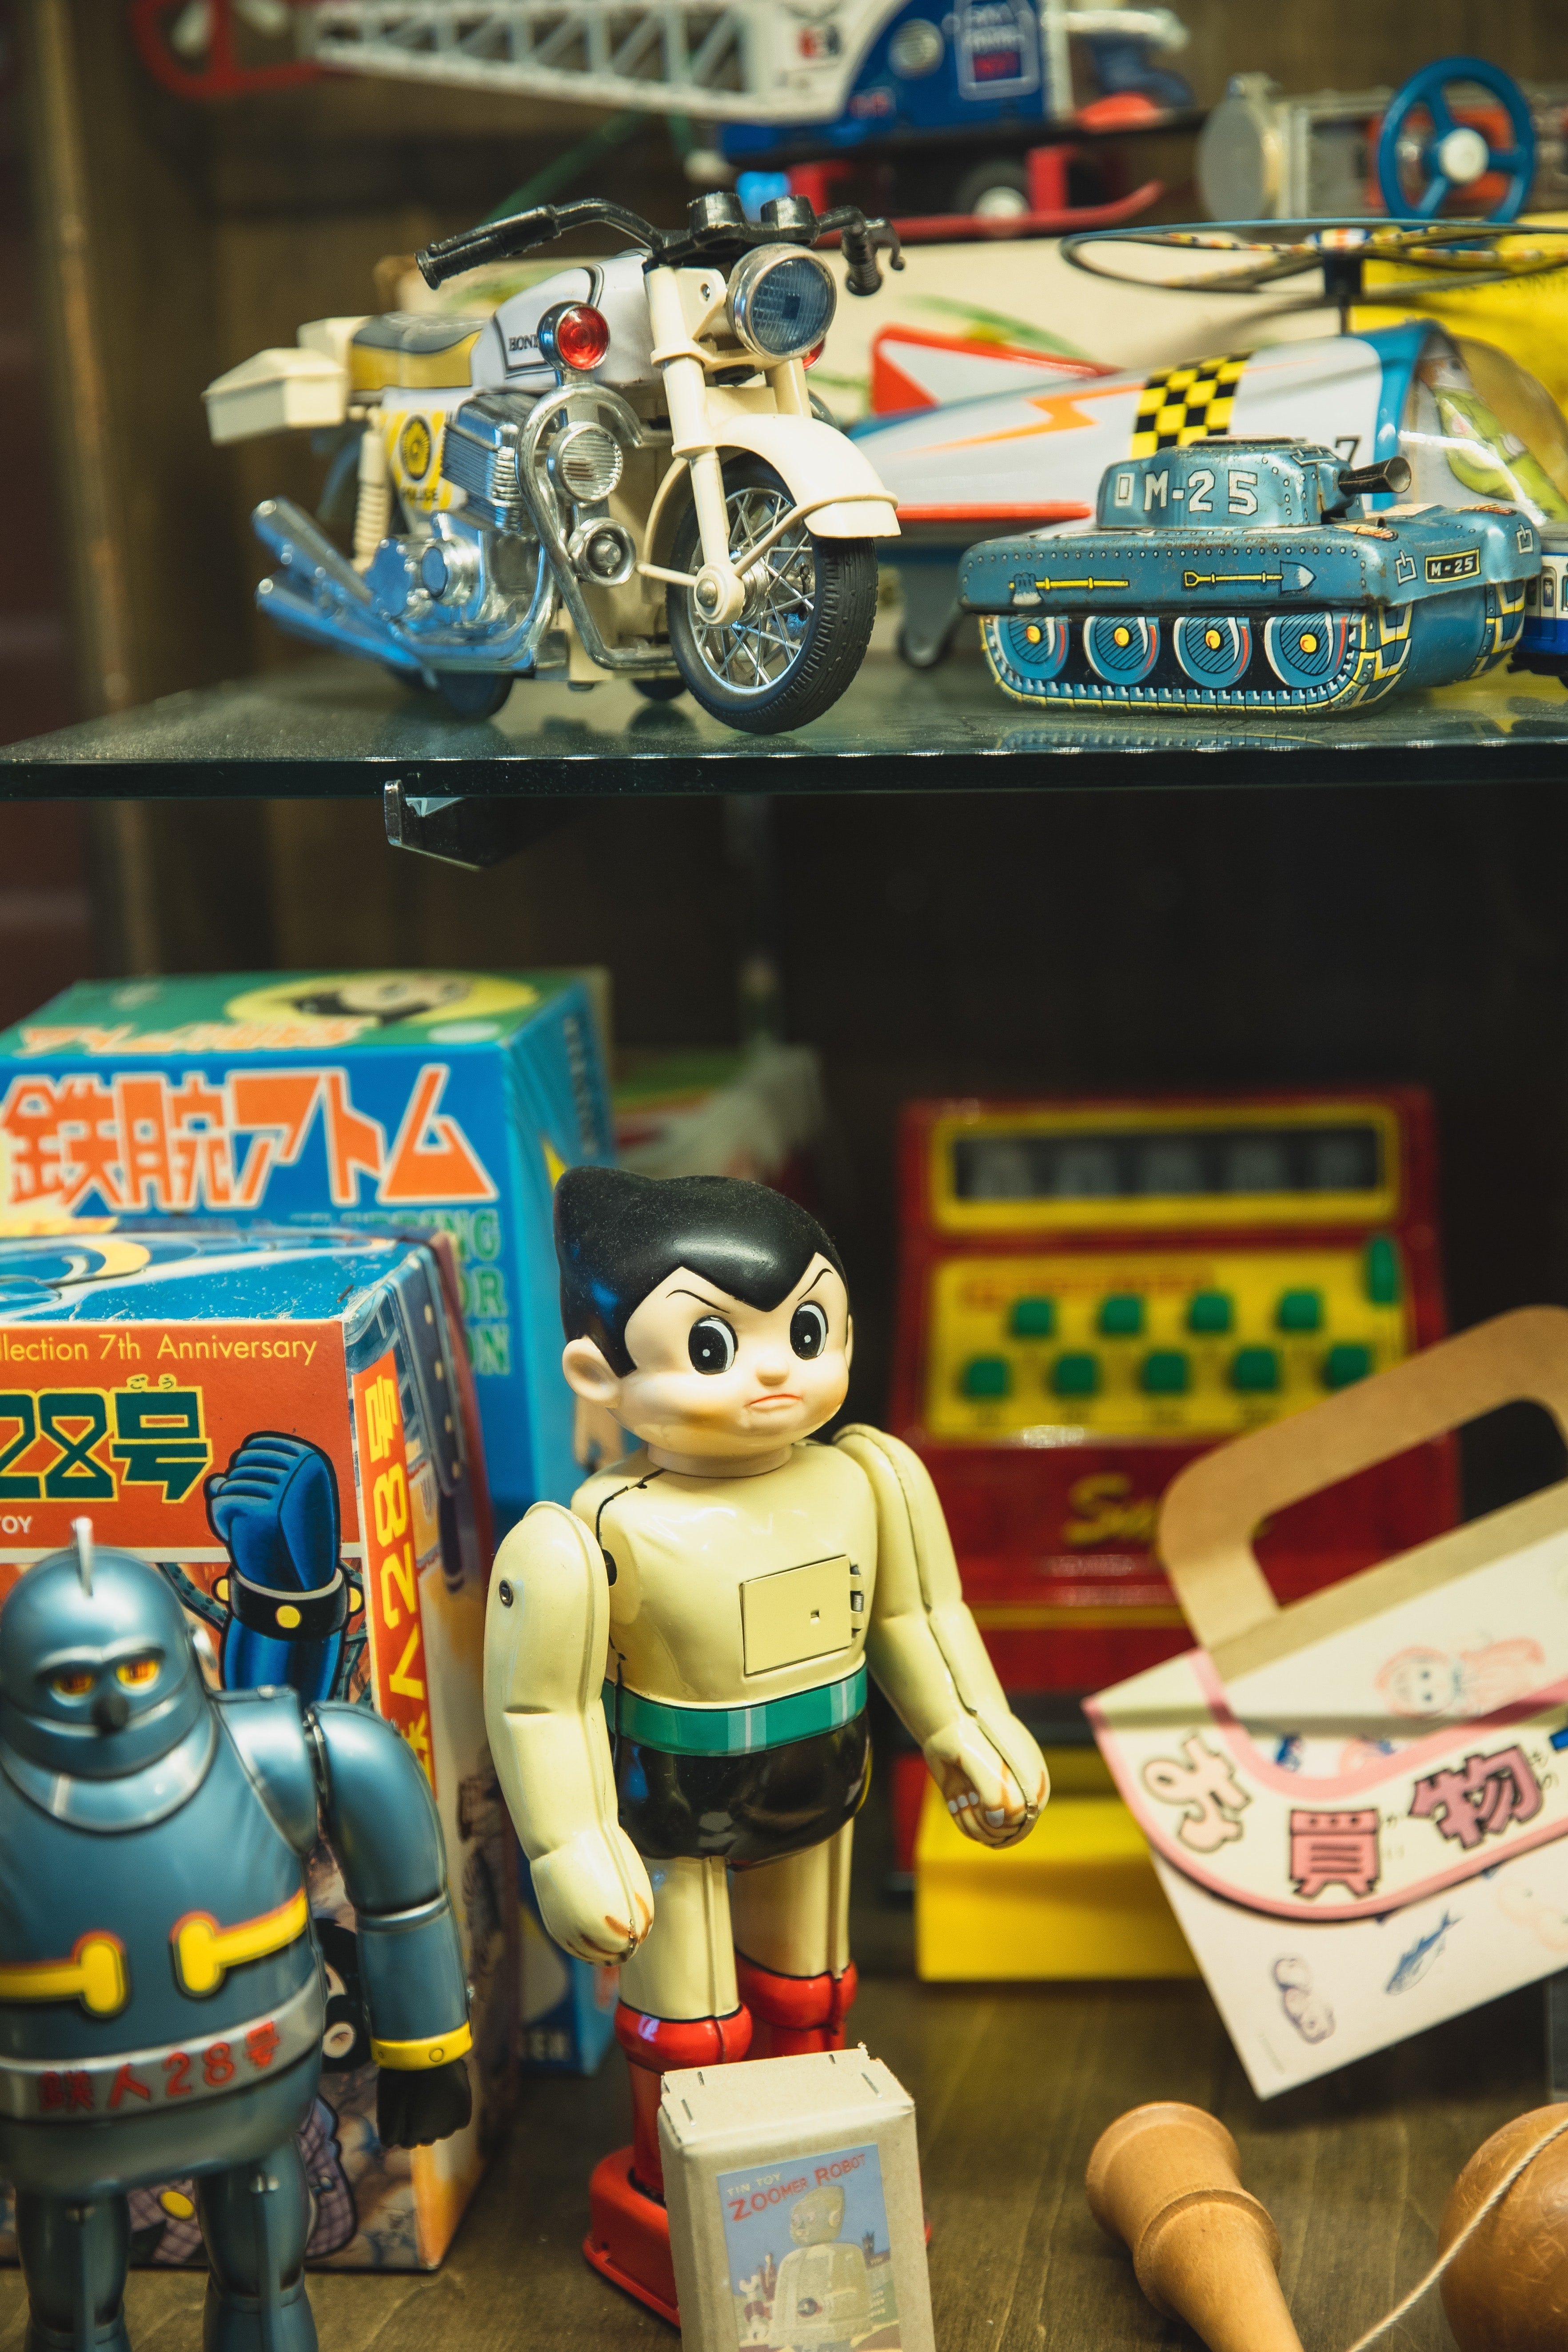 L'homme vendait des jouets usagés sur le bord de la route. | Source : Pexels